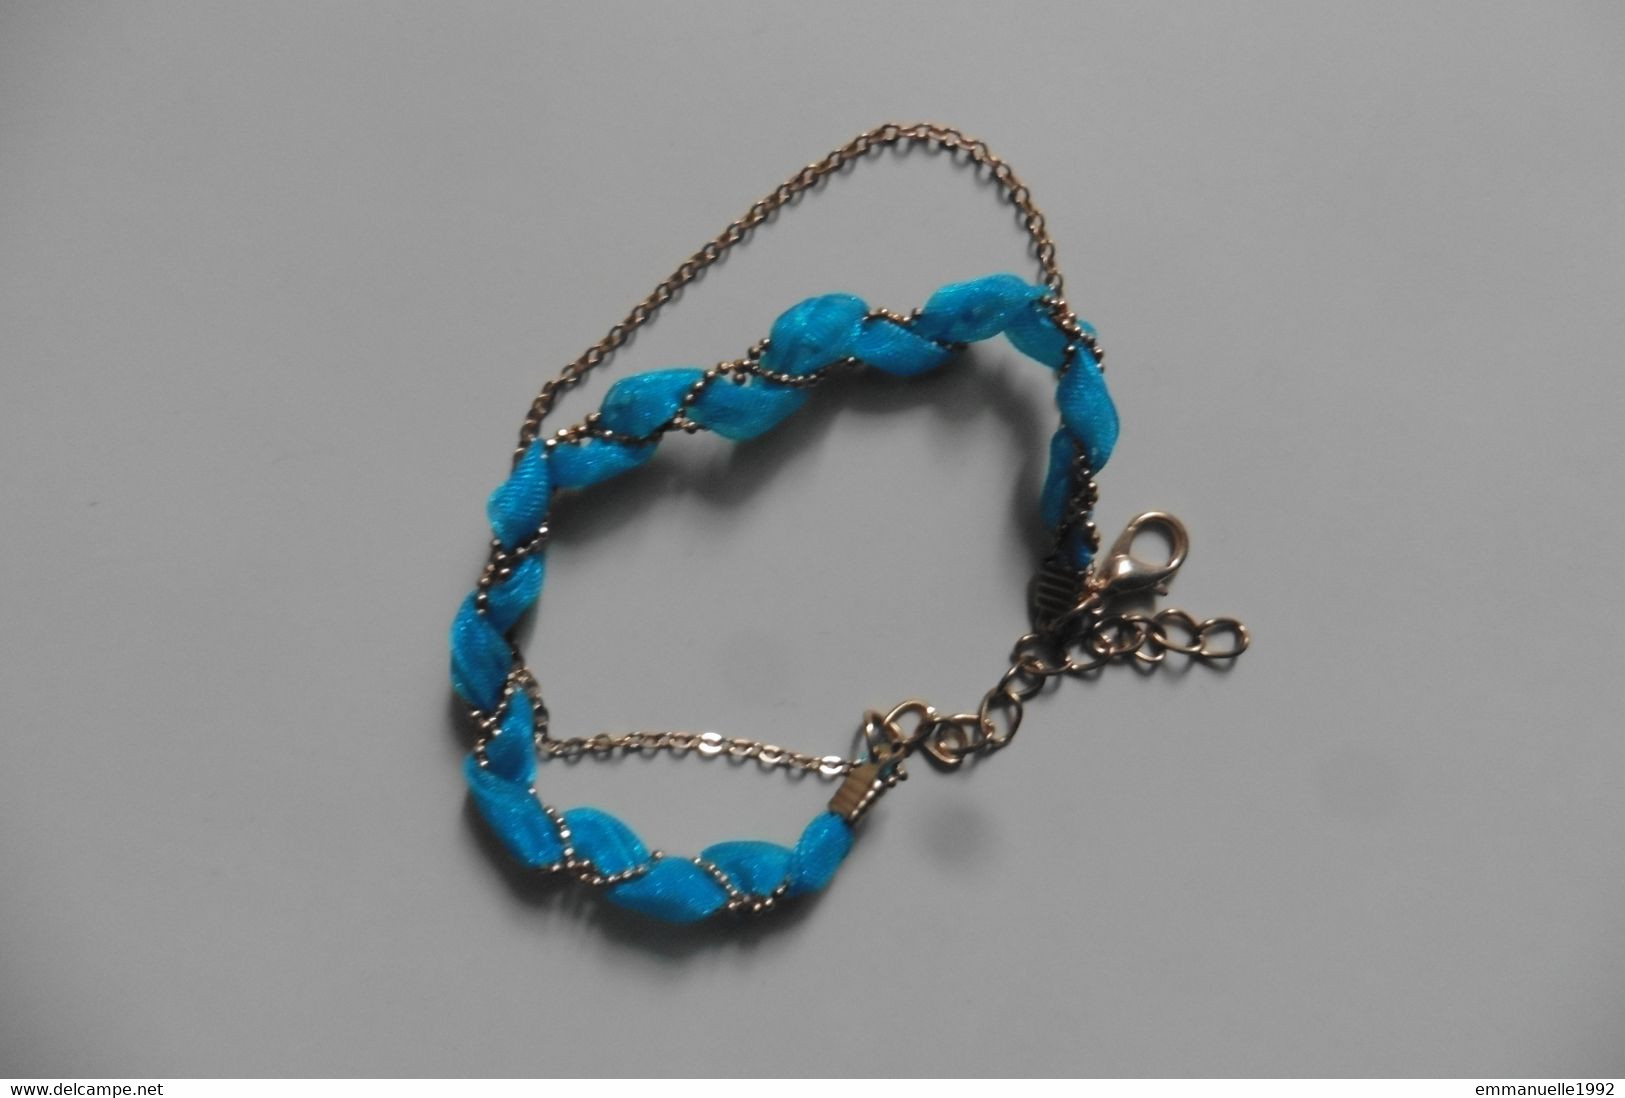 Neuf - Bracelet double chaîne et ruban tressé bleu turquoise et or - réglable